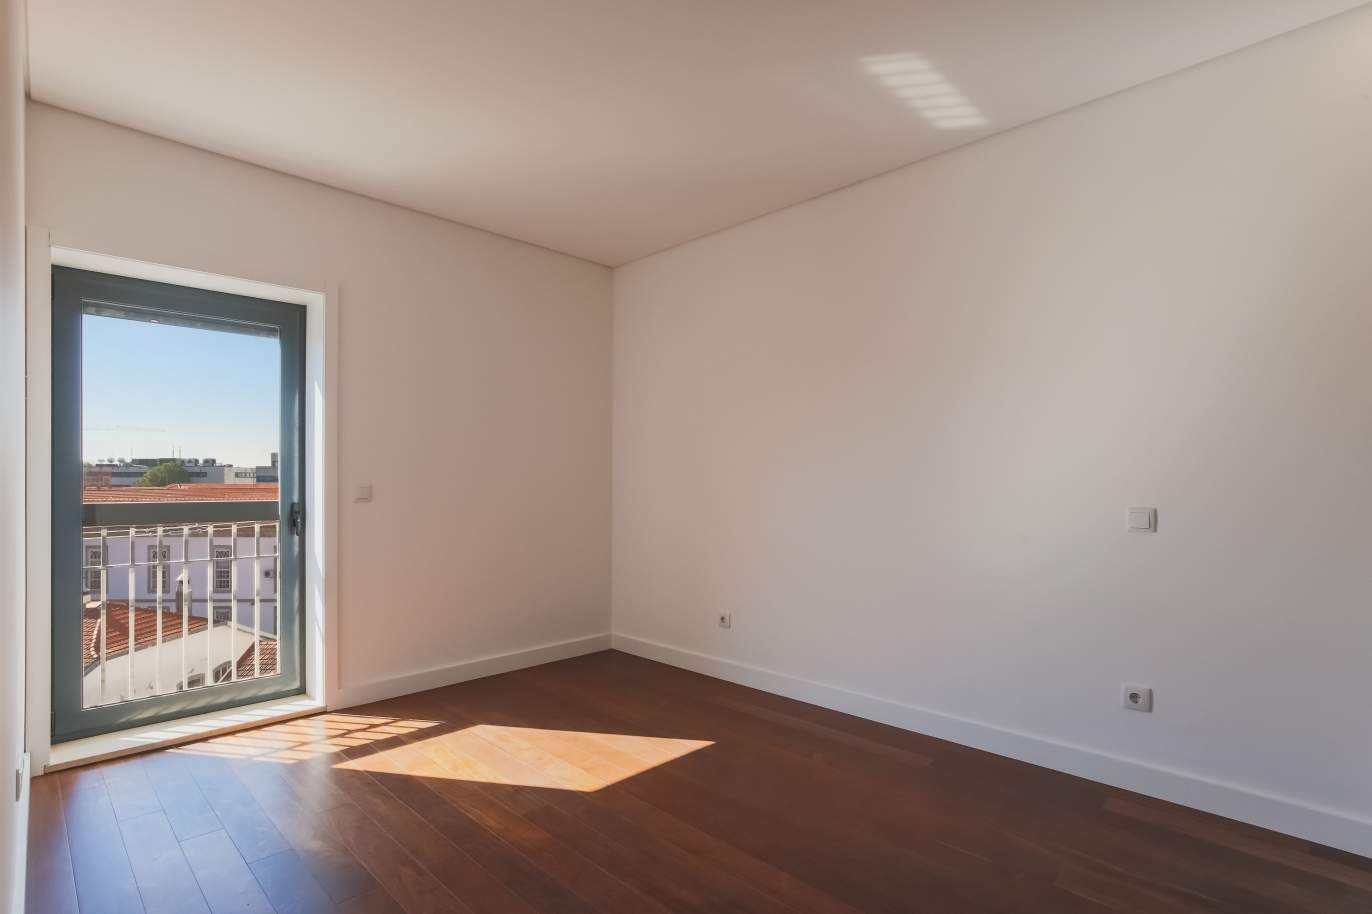 Sale of apartment in central location, Boavista, Porto, Portugal_122291